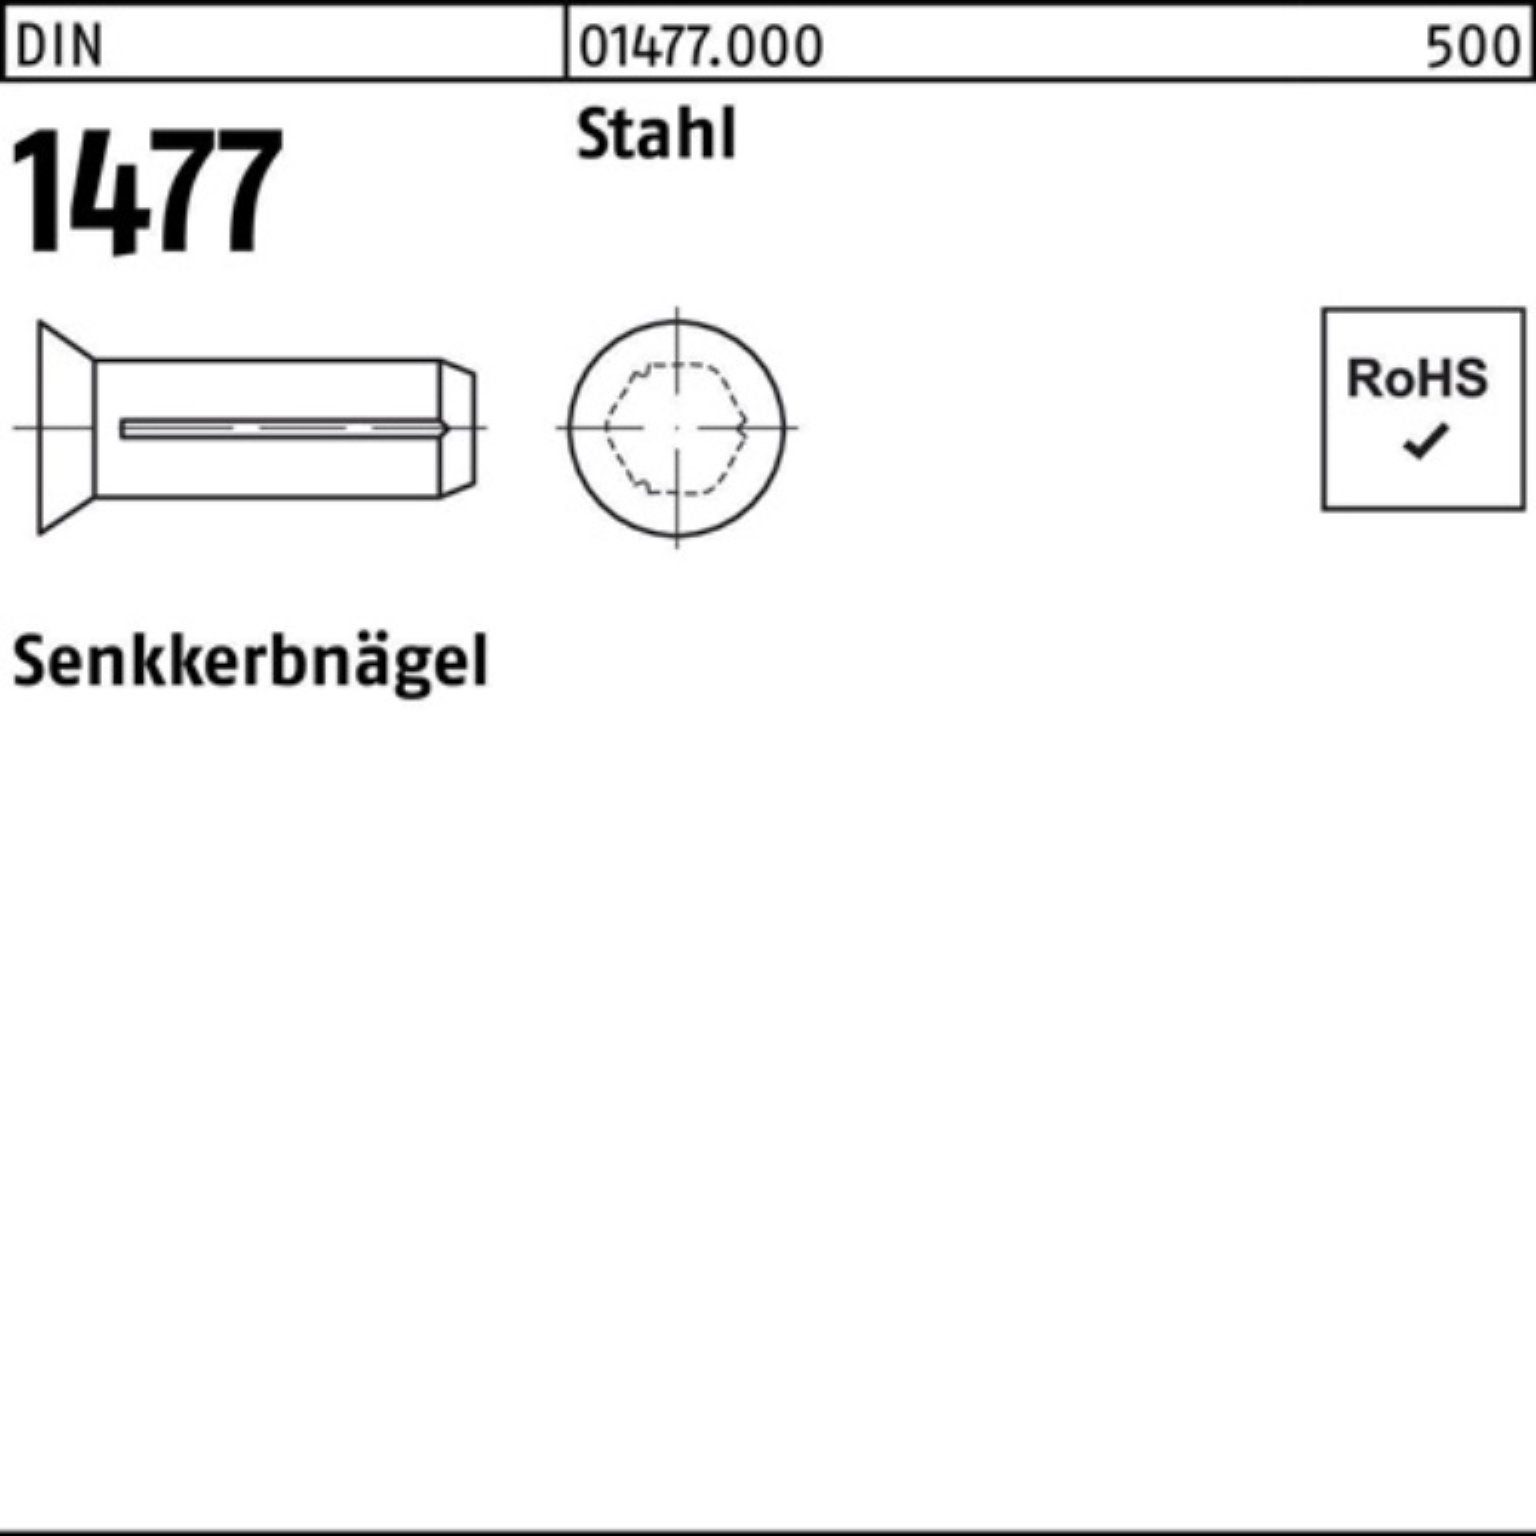 Pack Stahl DIN Senkkerbnagel Stück Reyher 2x 500er Stahl 1477 1477 DIN 500 Nagel 4